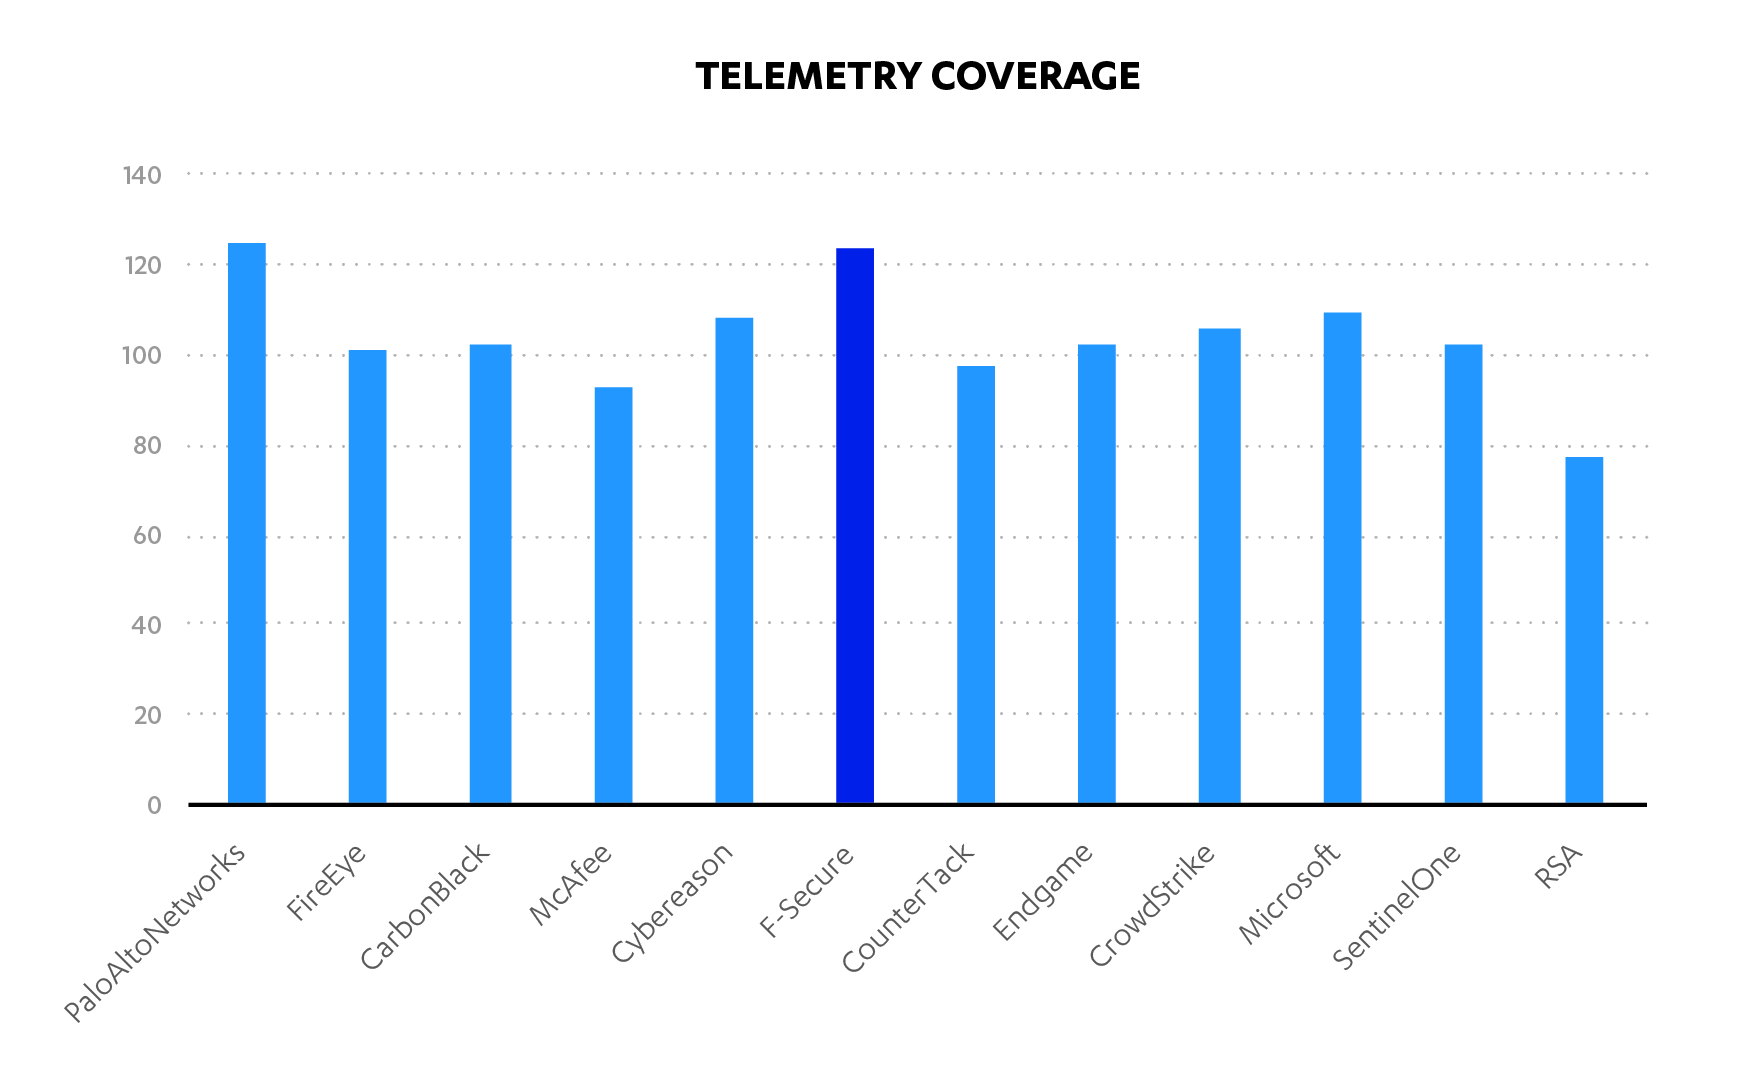 Telemetry coverage